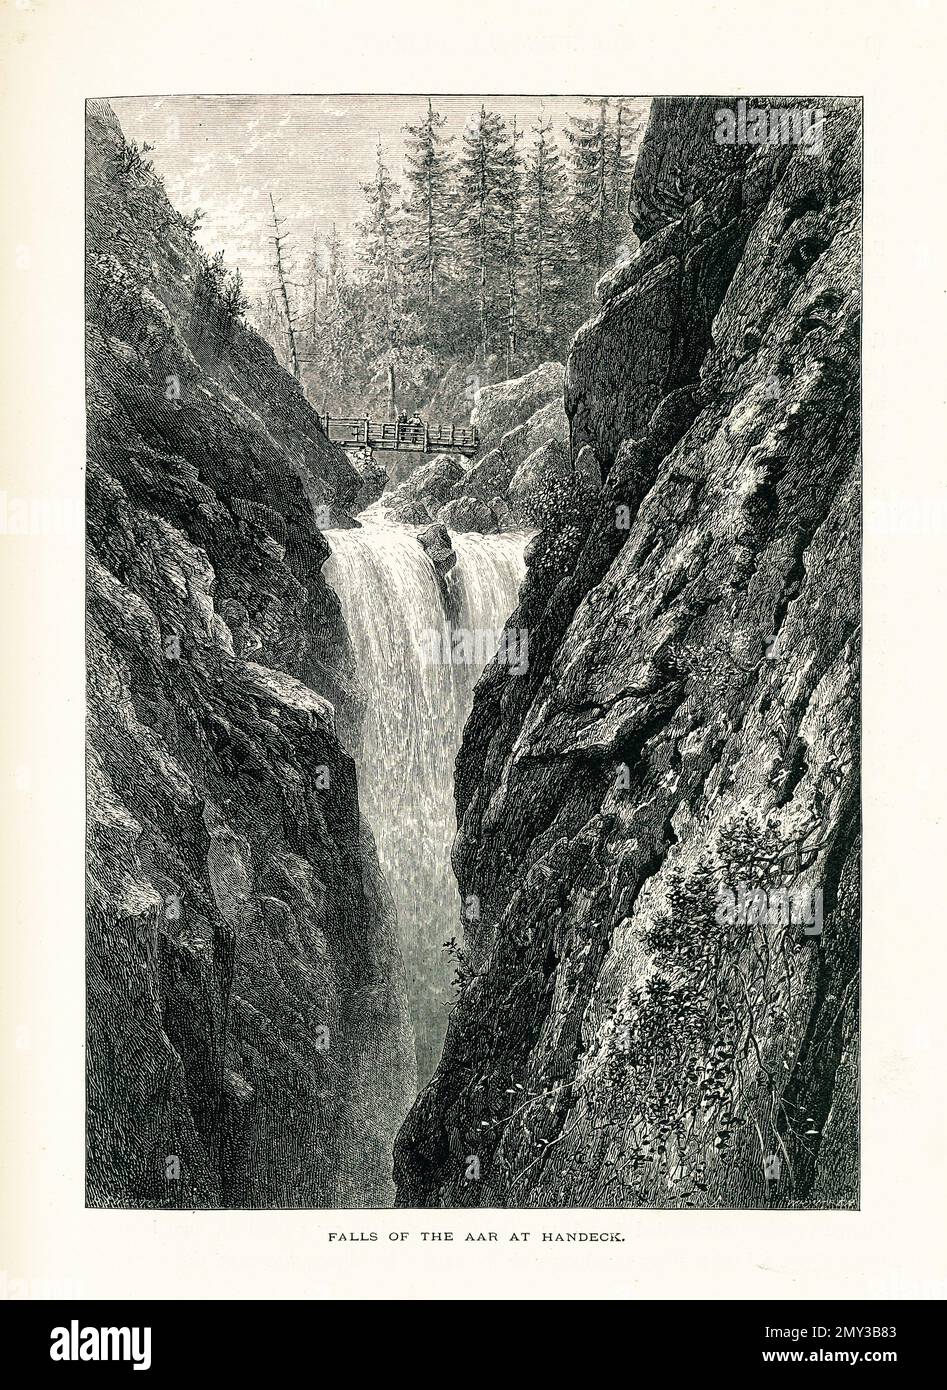 Antica incisione della cascata di Handegg, una cascata di 46 metri formata dal fiume Aar ad Handegg, in Svizzera. Illustrazione pubblicata nella pittoresca UE Foto Stock